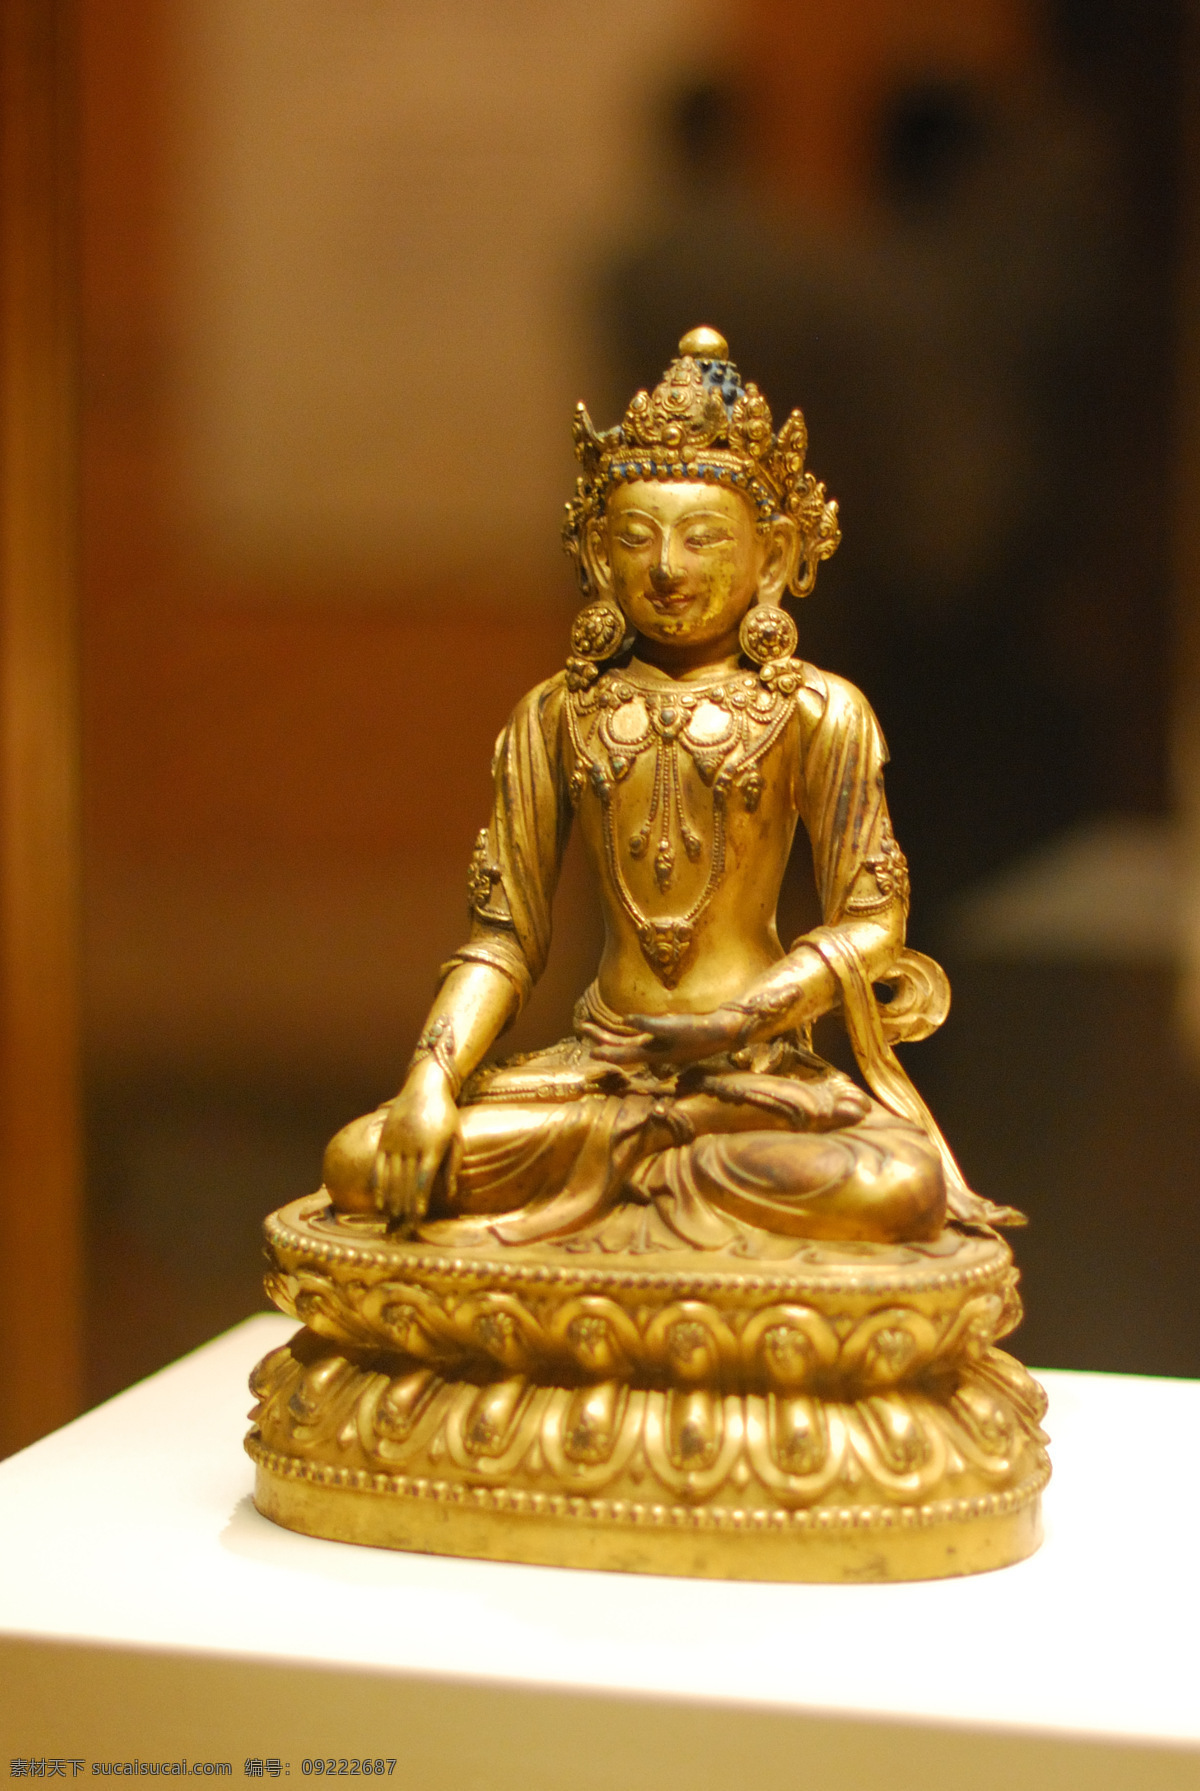 佛像 菩萨像 神像 天王 天神 雕像 铜像 国宝 博物馆 收藏 珍宝 传统文化 文化艺术